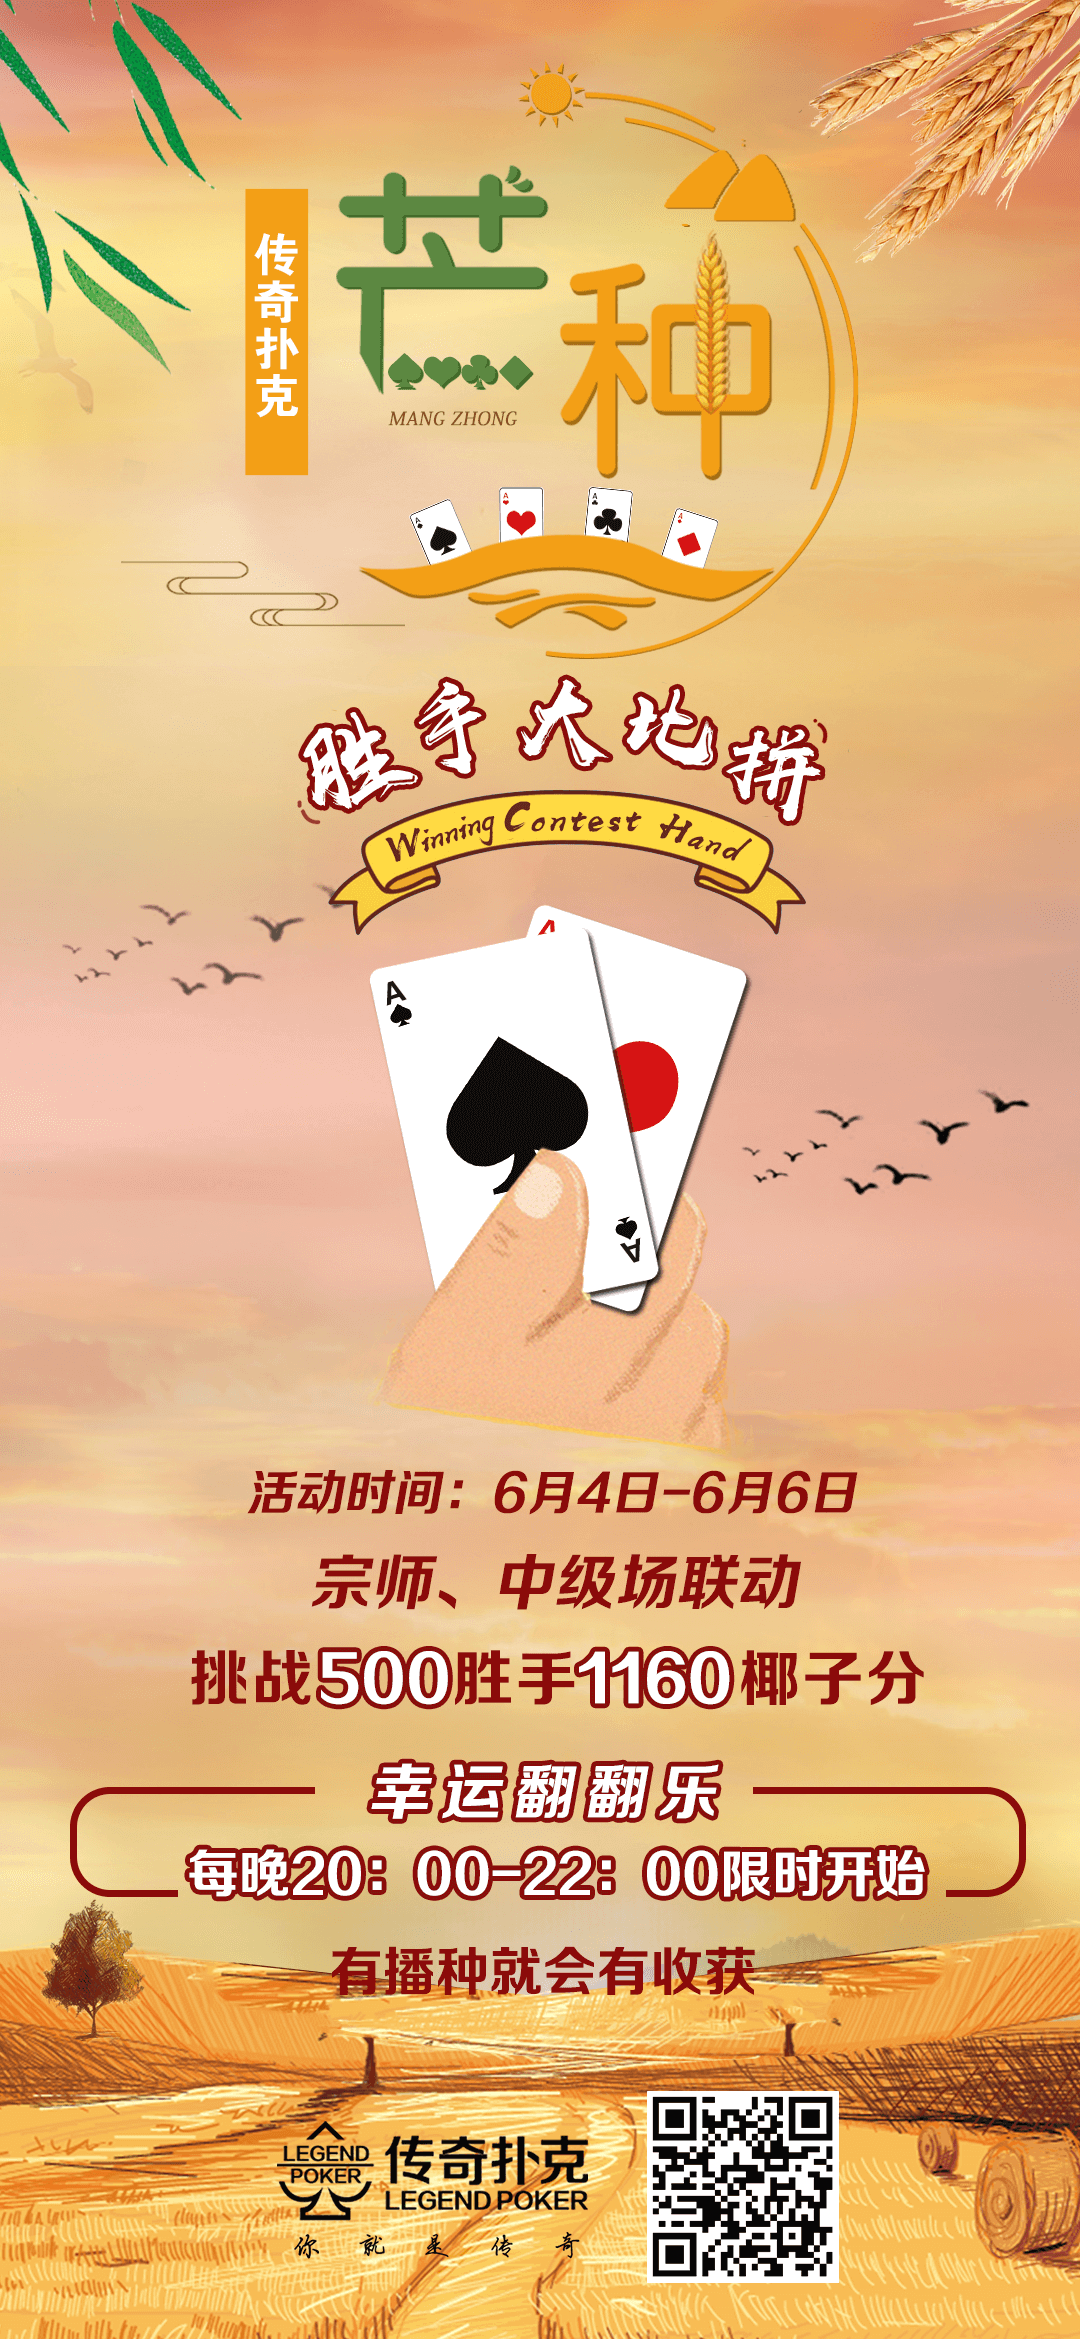 传奇扑克棋牌手游APP下载